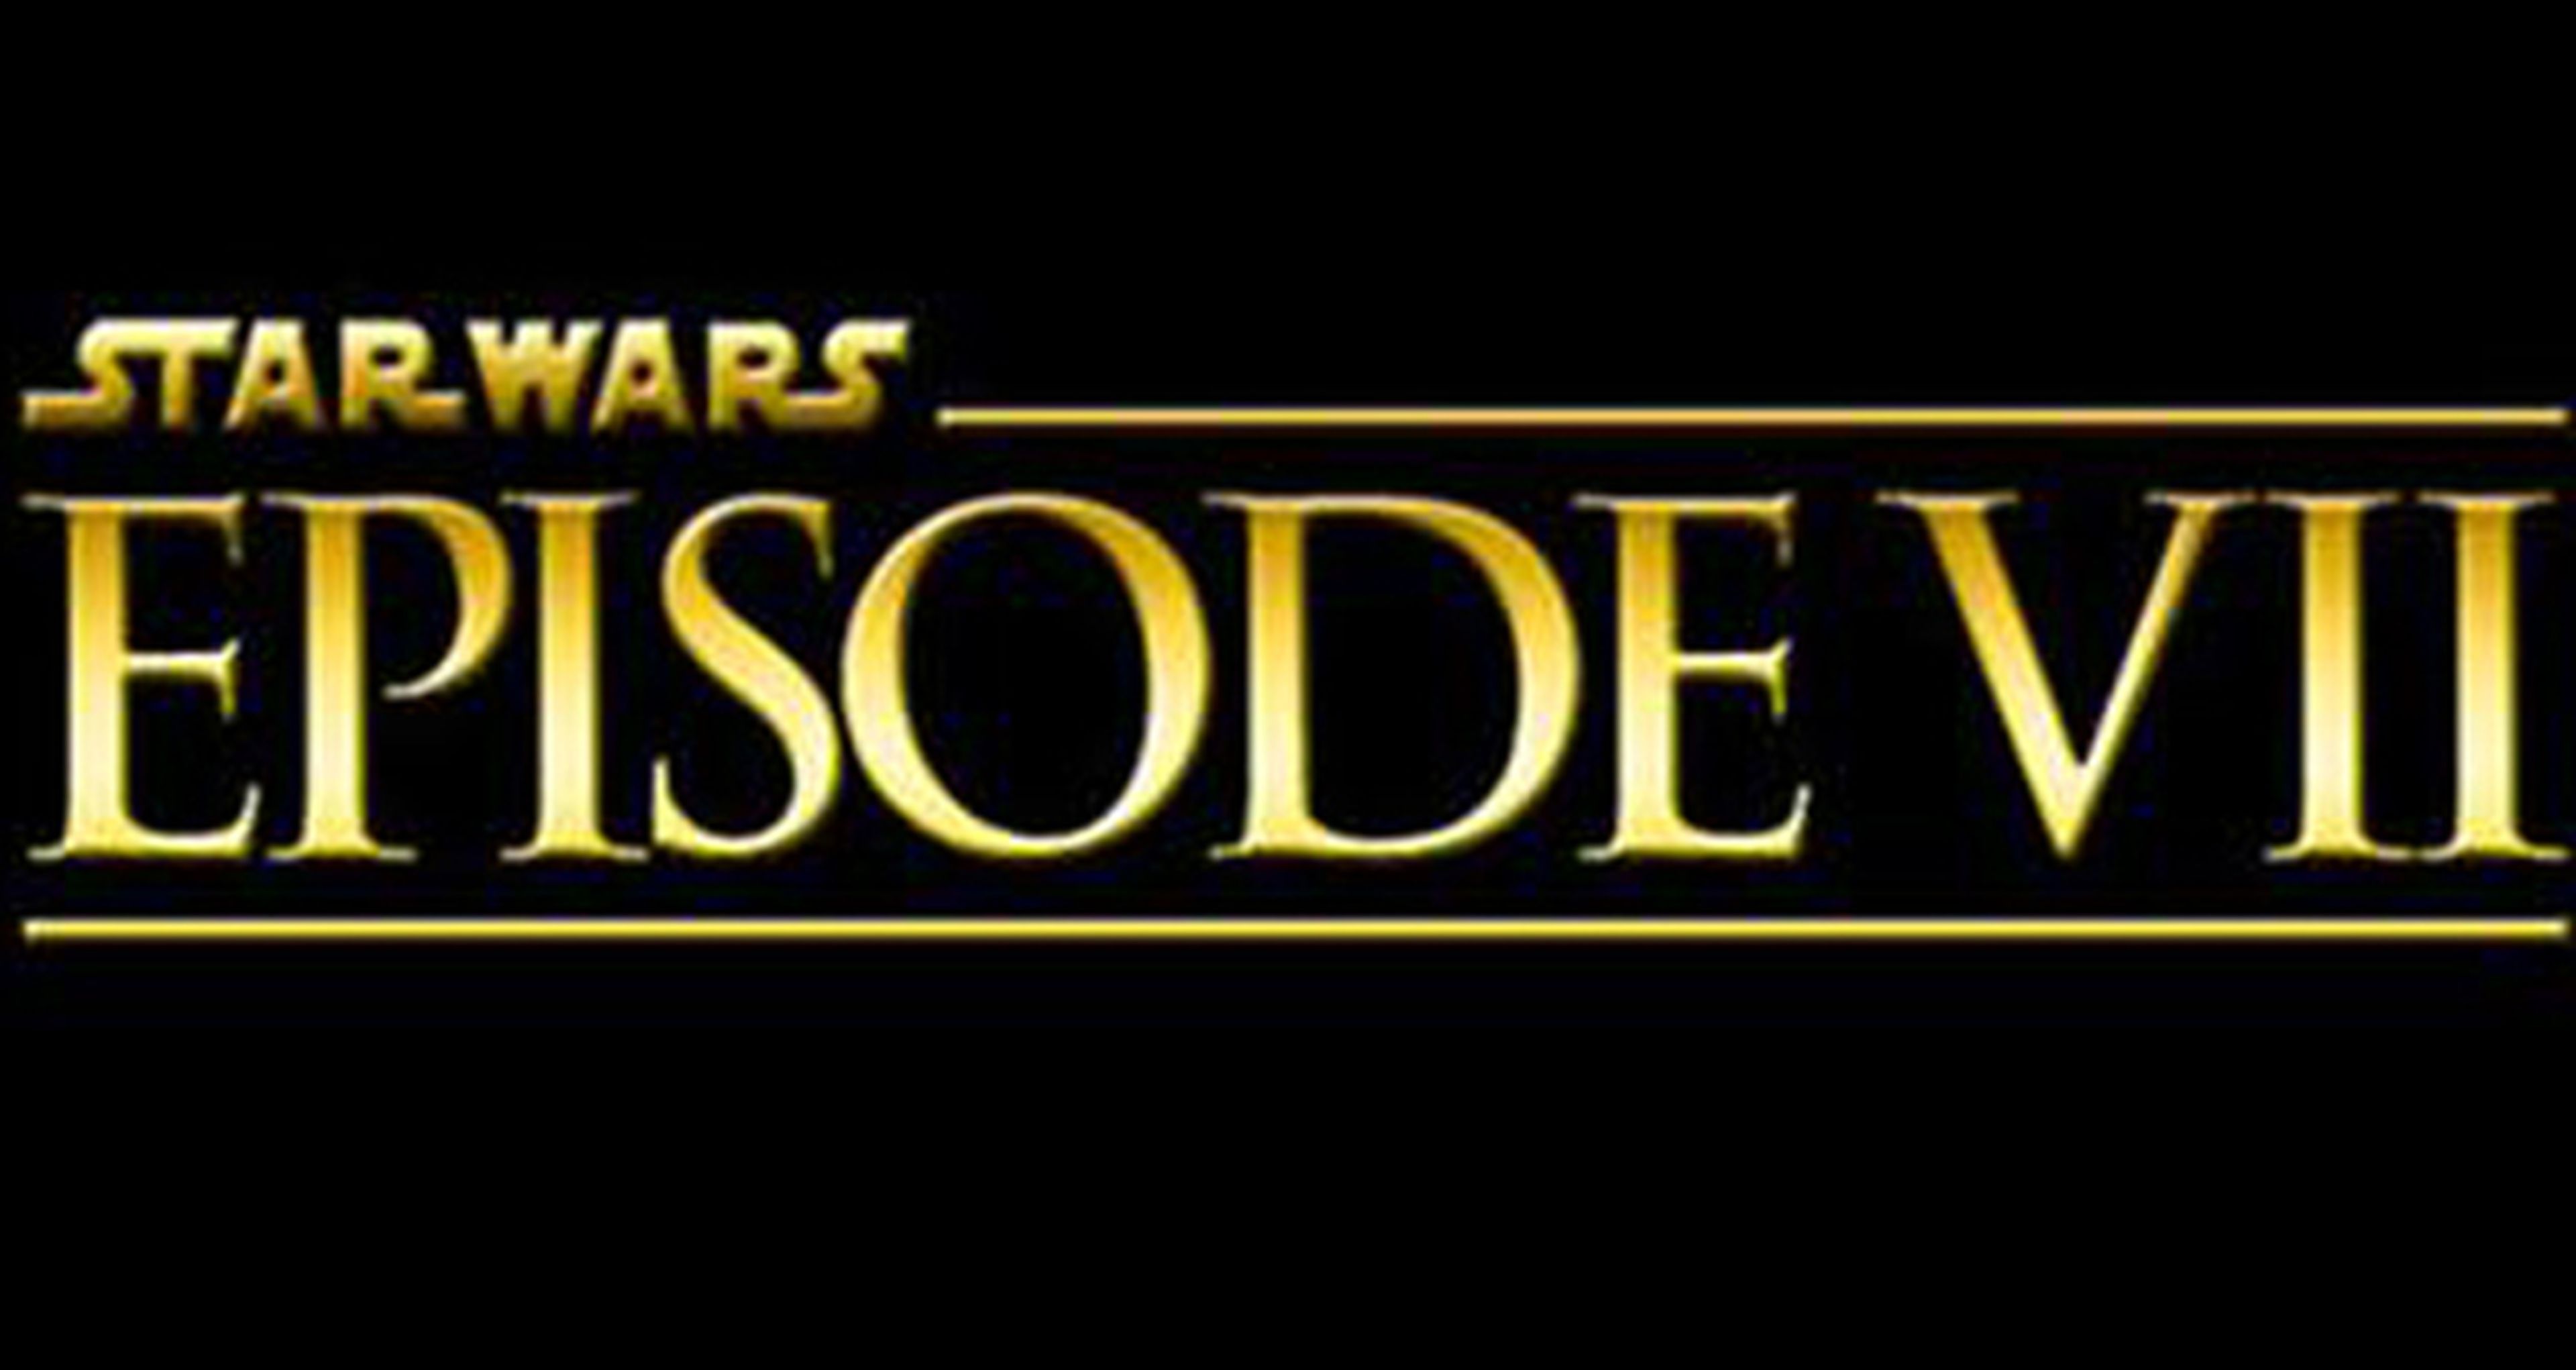 Star Wars Episodio VII se estrenará en diciembre de 2015